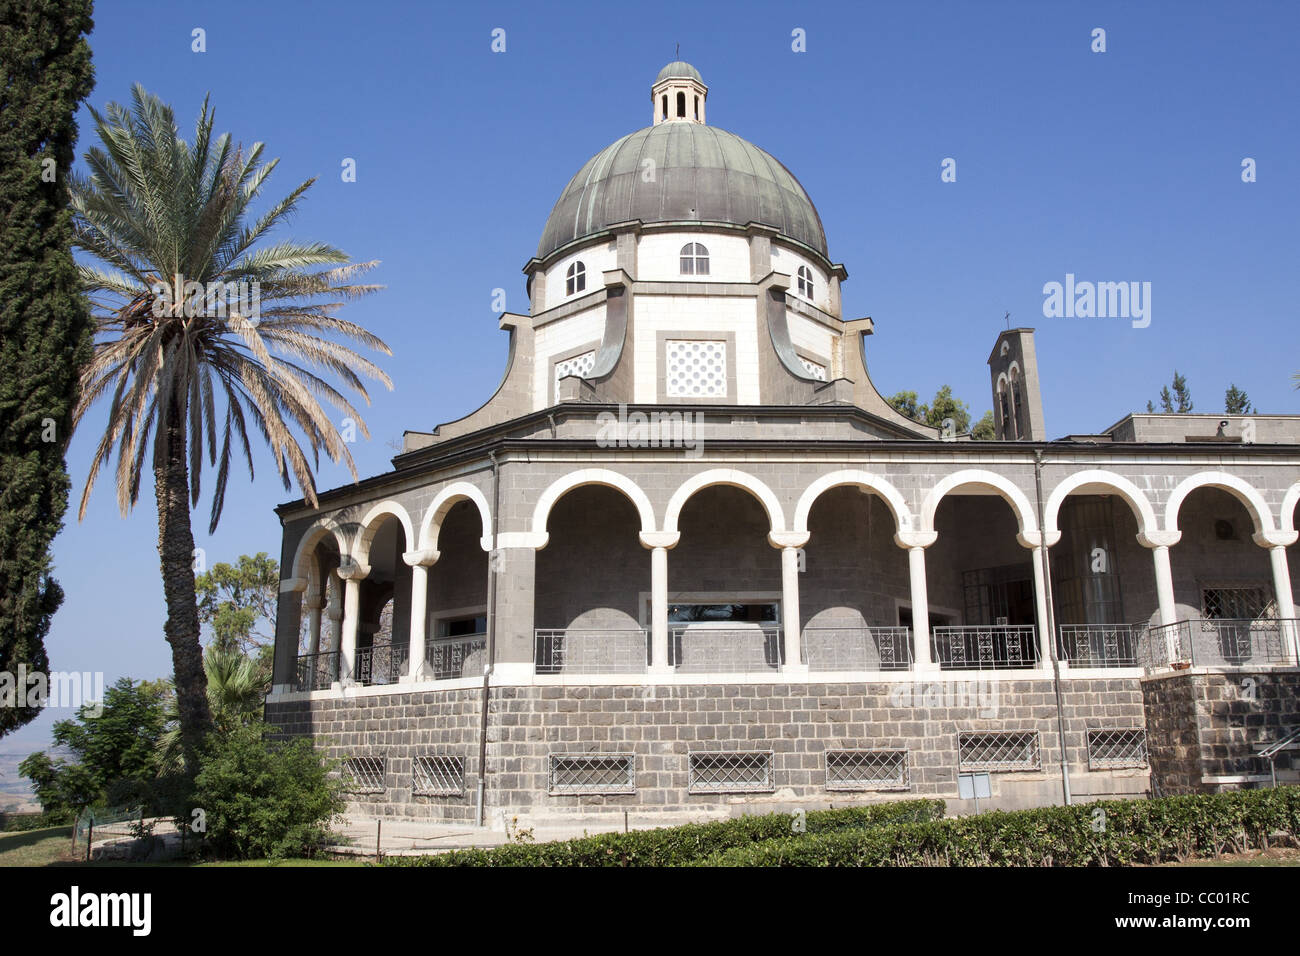 Chiesa delle beatitudini costruito nel 1939 dall'architetto Antonio BARLUZZI sul Monte delle Beatitudini, la Galilea, Israele Foto Stock